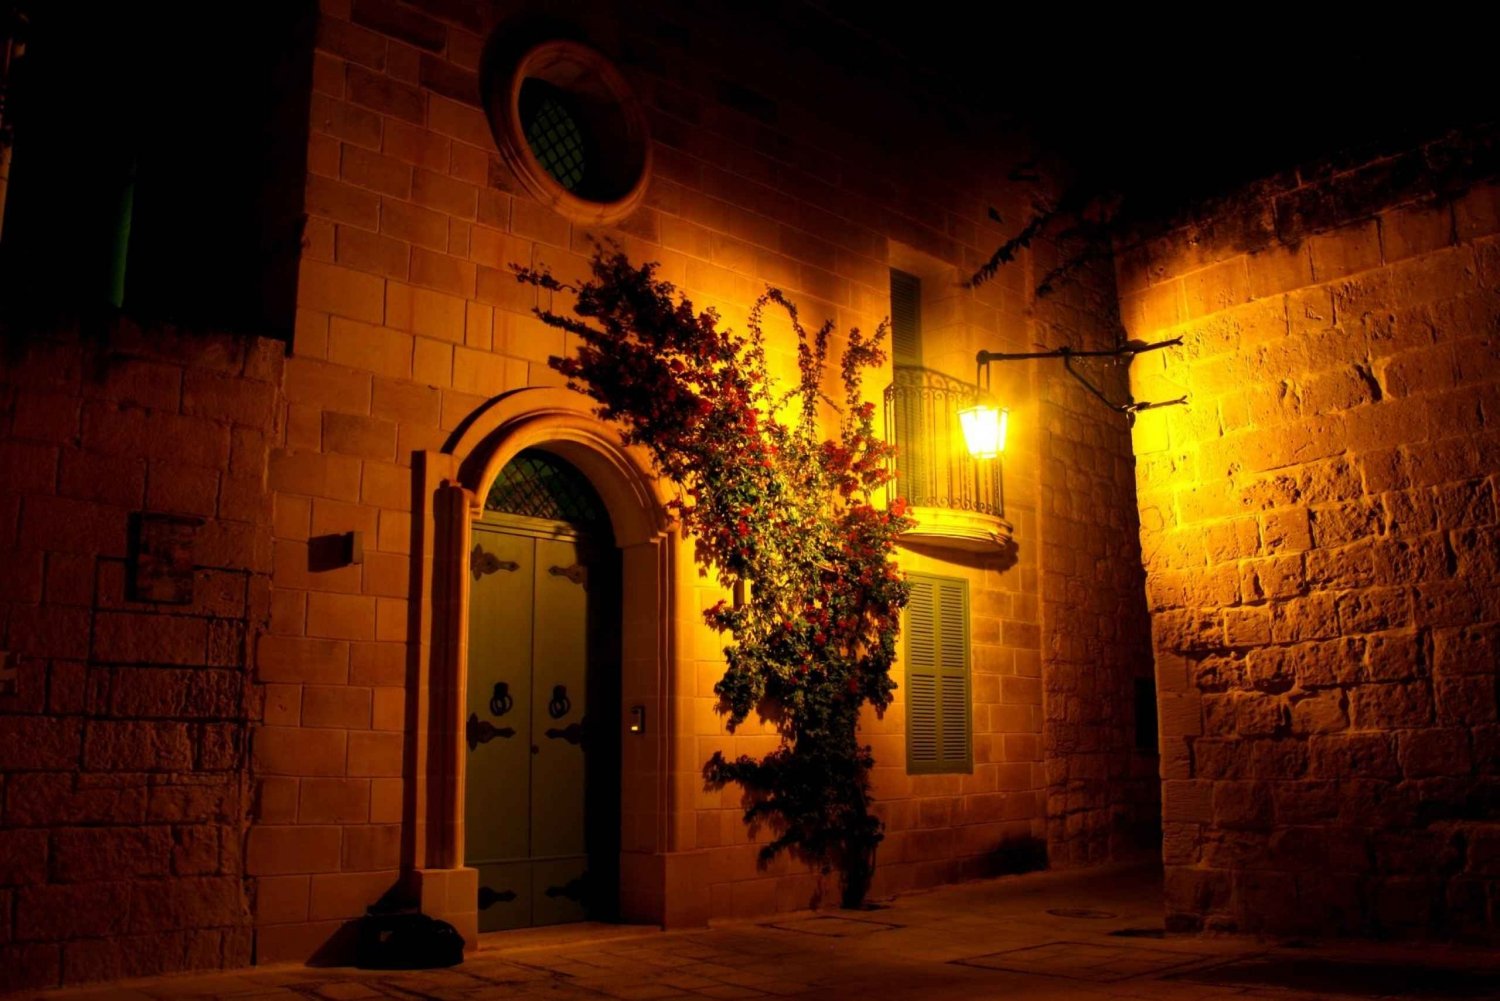 Mdina: Valletta Waterfront Area, Mdina, and Rabat Night Tour